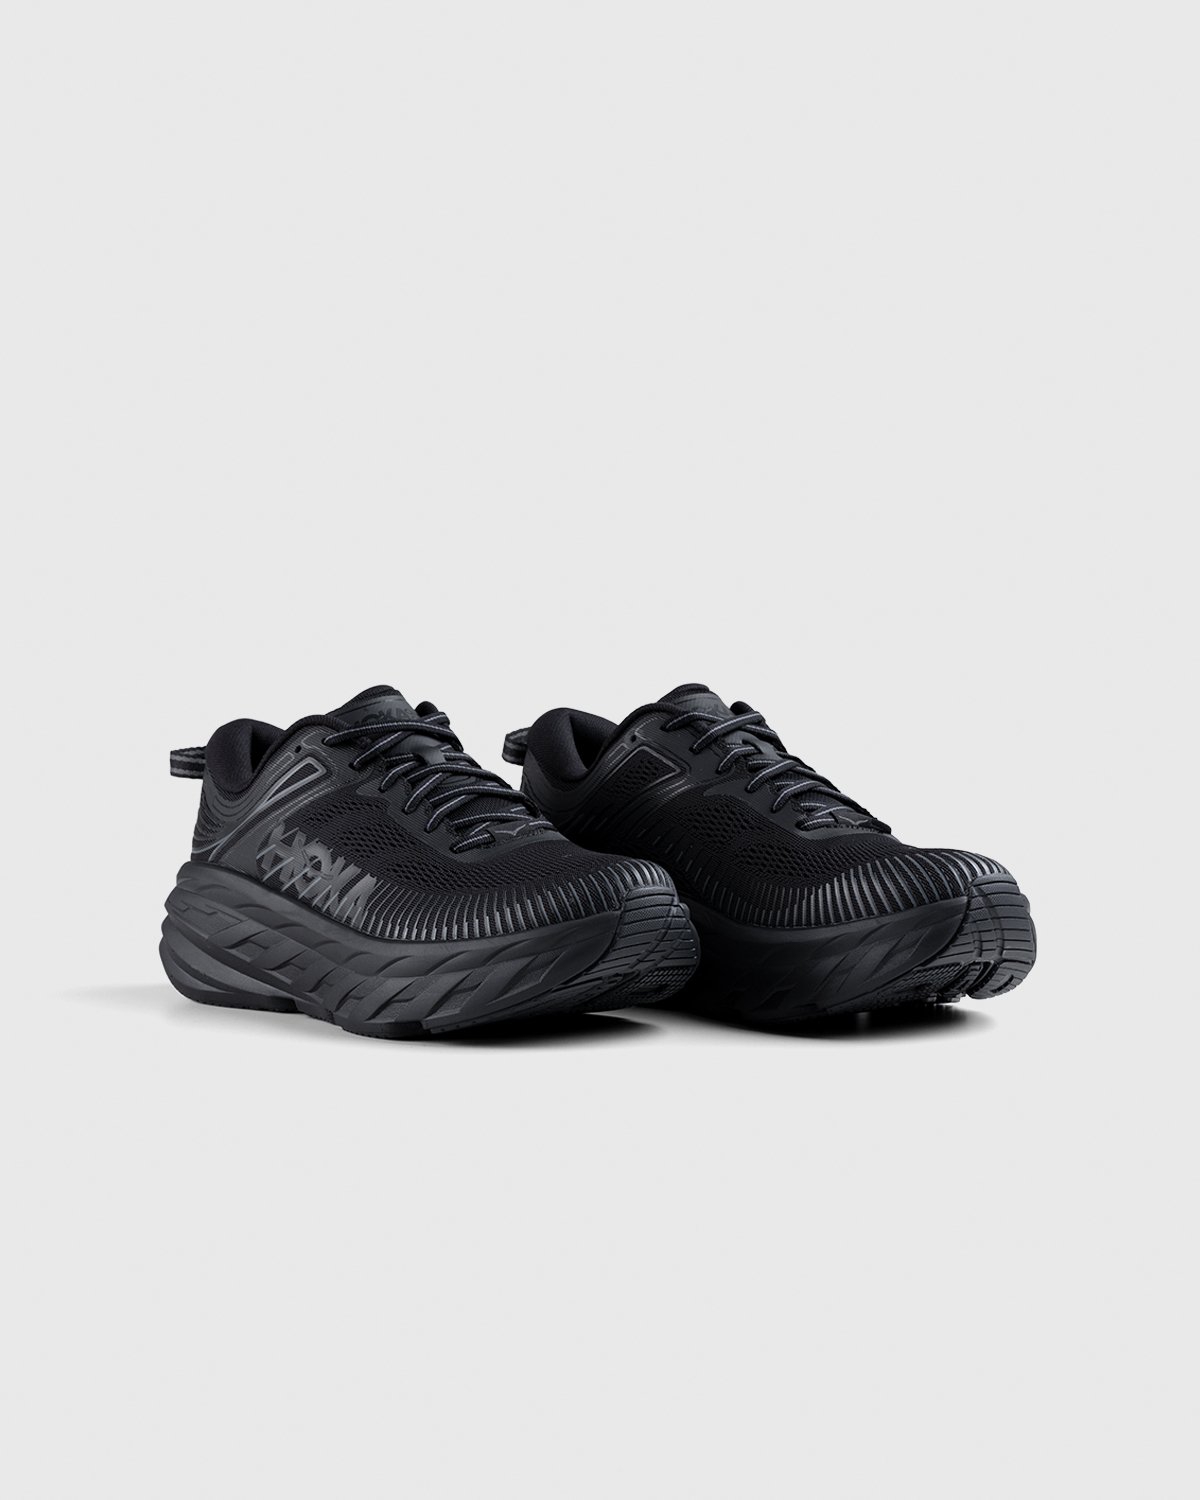 HOKA - M Bondi 7 Black - Footwear - Black - Image 3